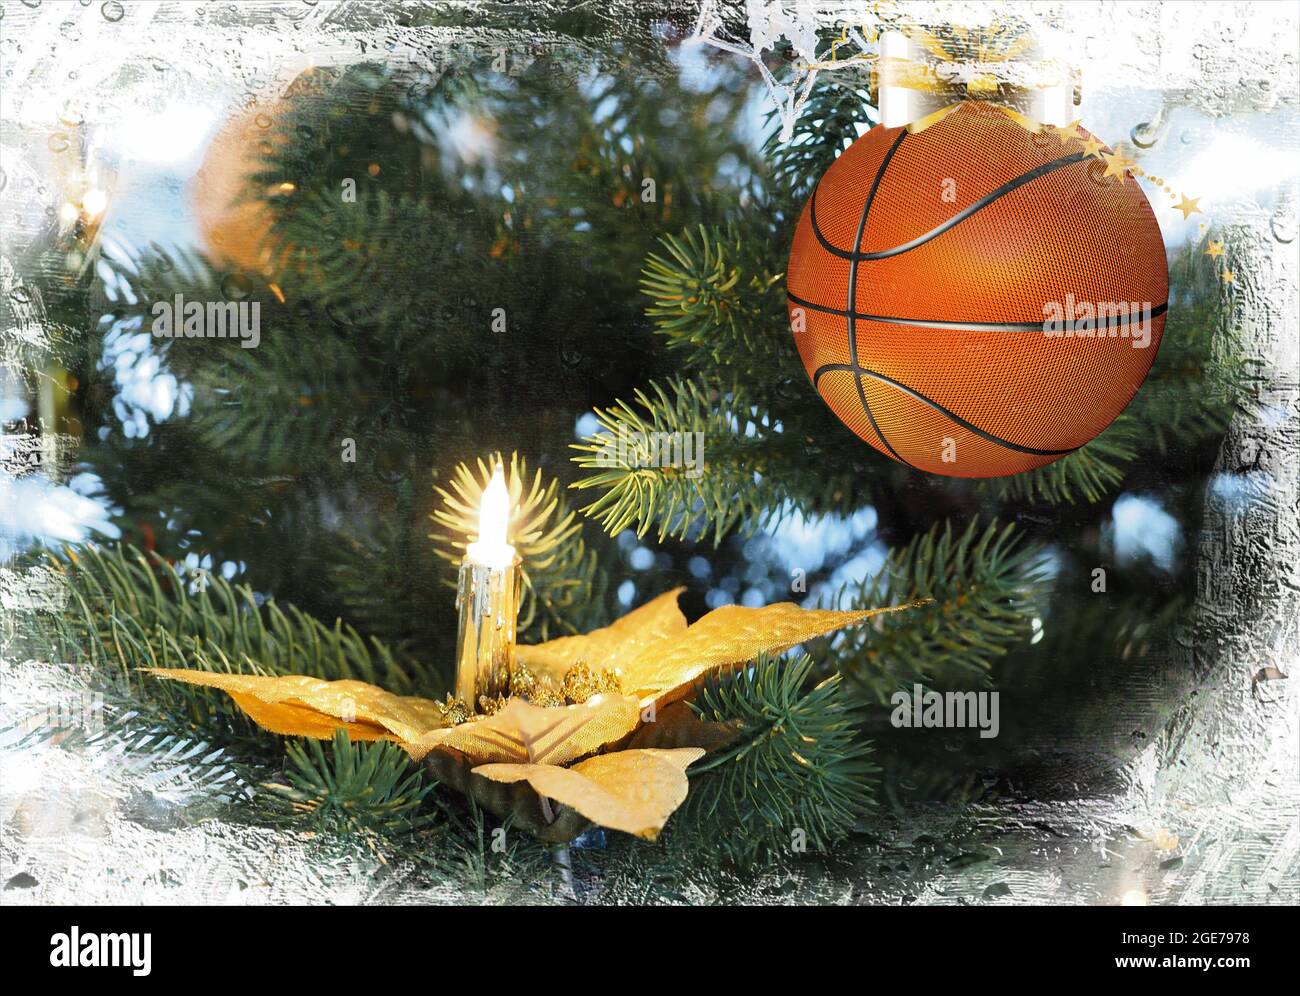 Basketball-weihnachtskugel, die auf dem Tannenzweig hängt. Weihnachtsgrüße Stockfoto